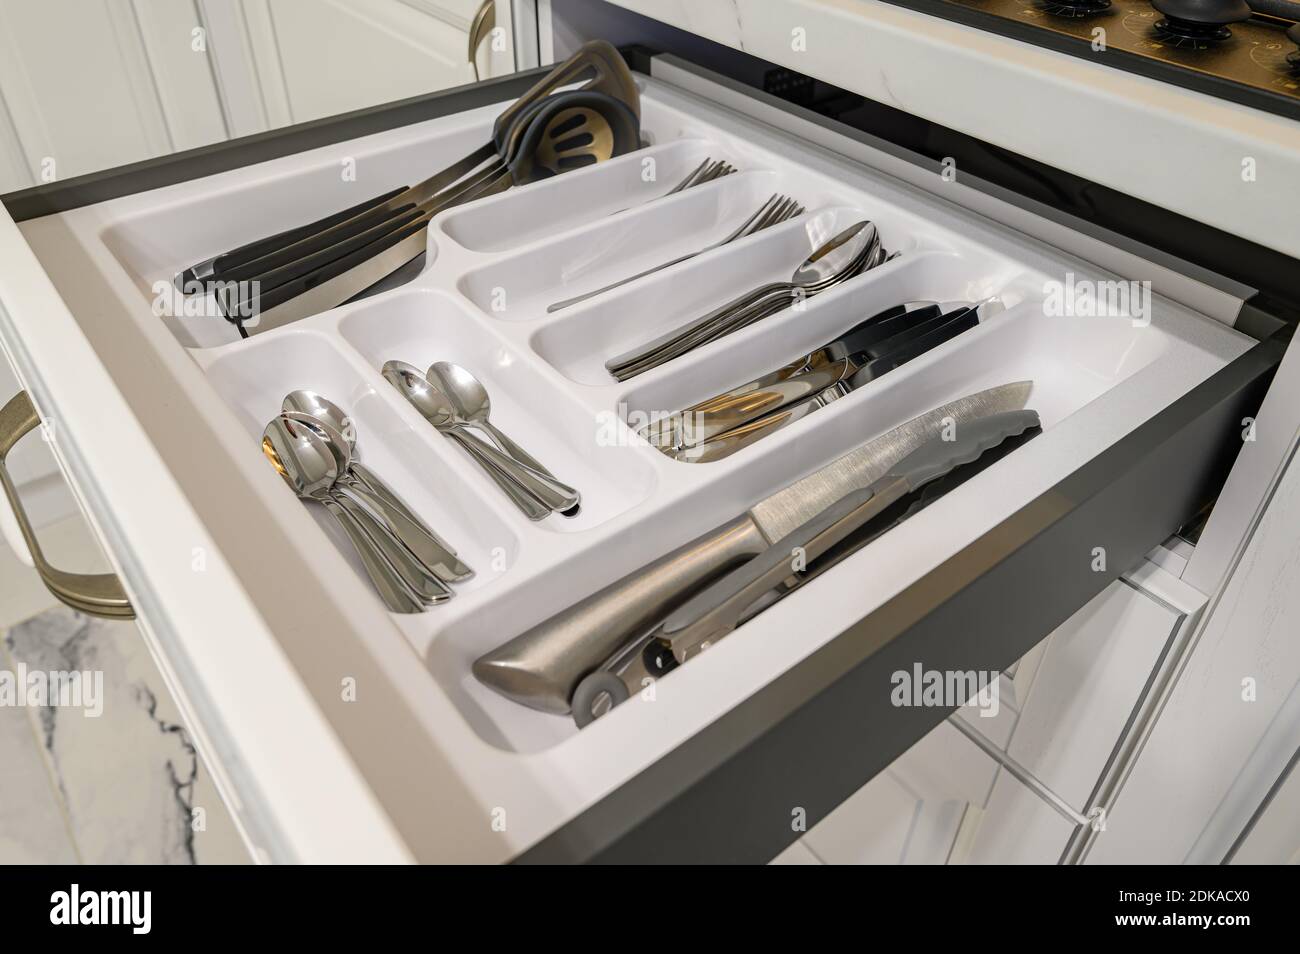 Offene Schublade mit Besteck in modernen weiß woden Küche in Klassischer Style Stockfoto